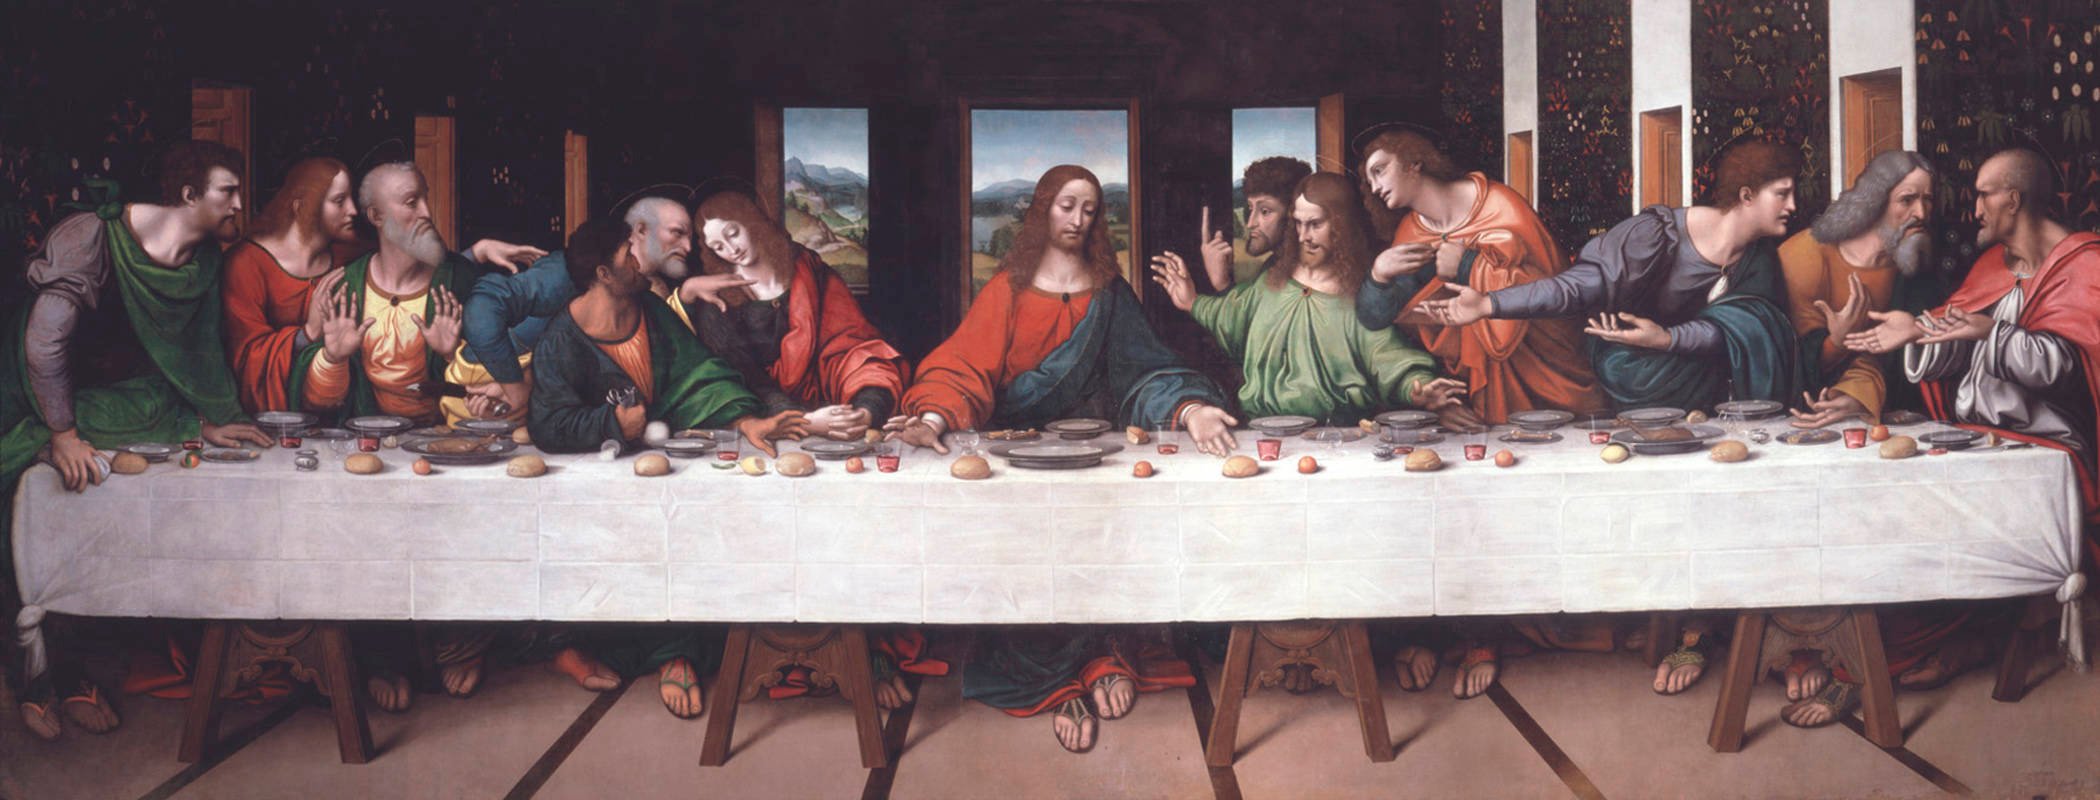 Imitation of Da Vinci's the Last Supper by Giampietrino